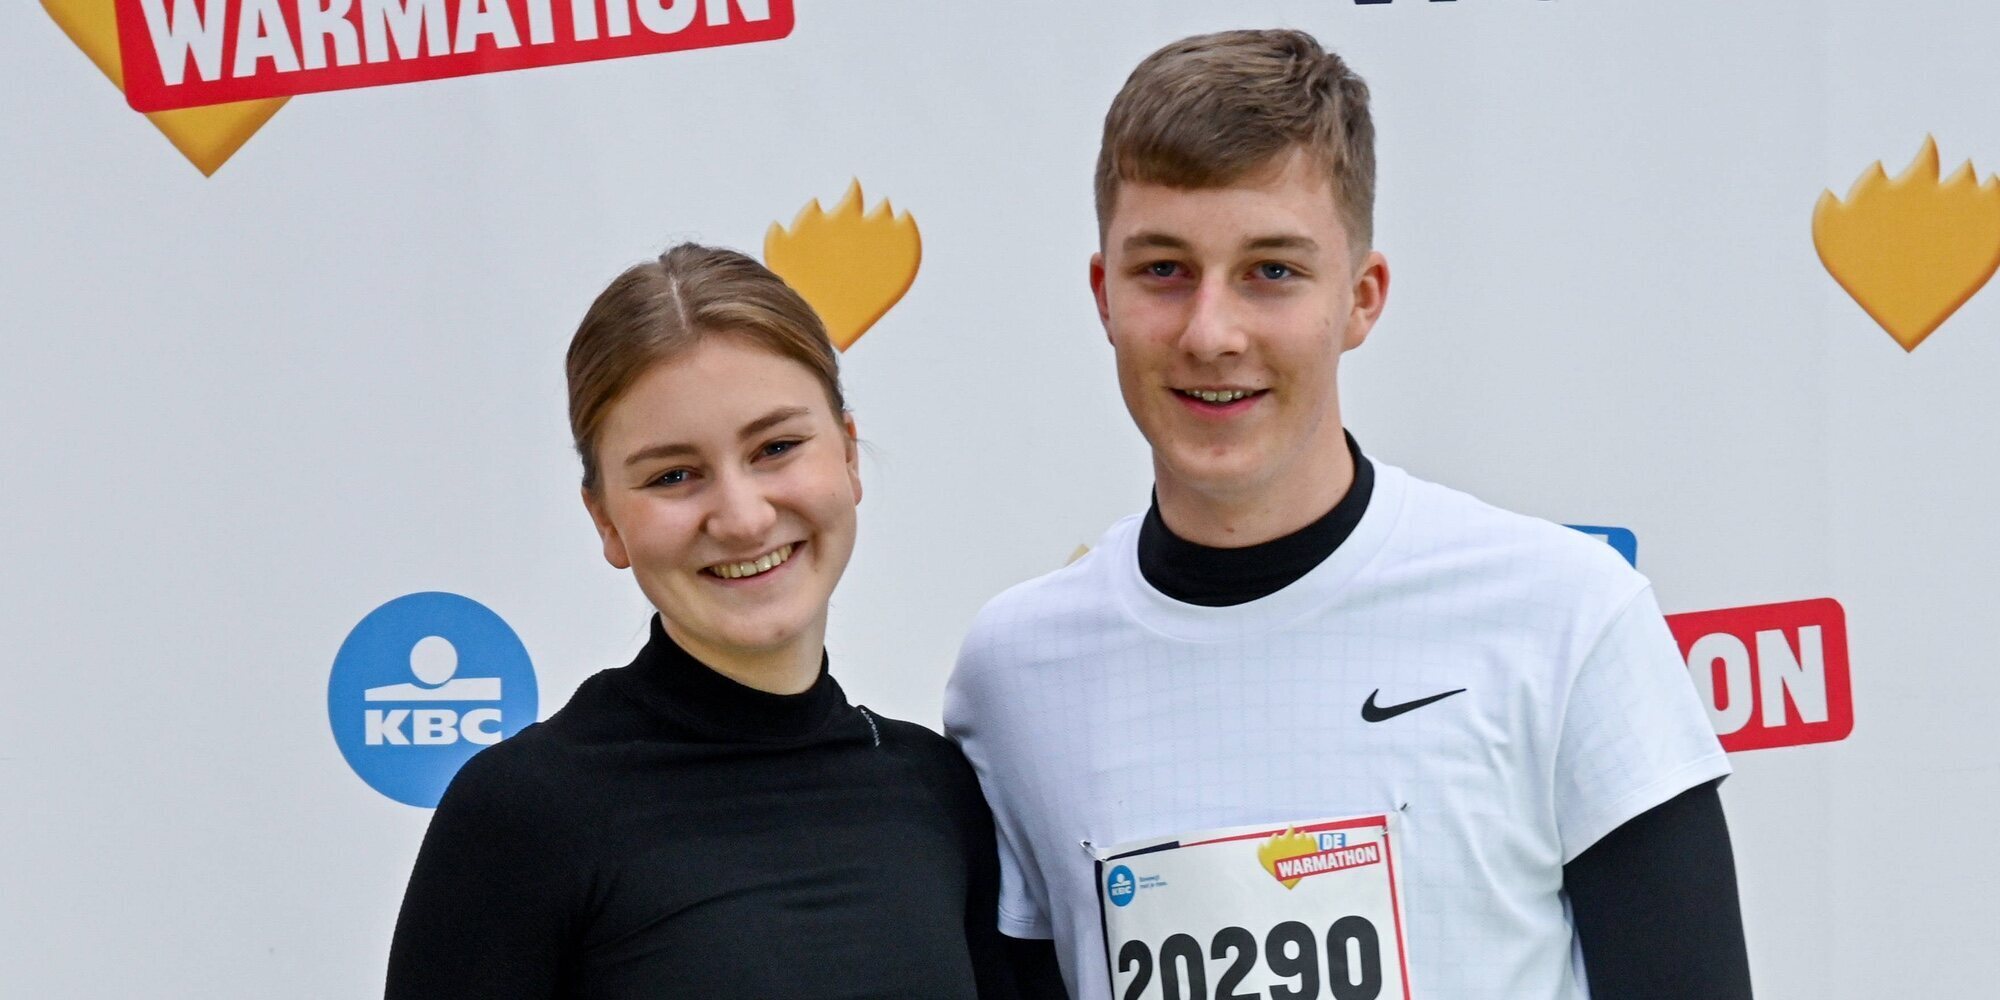 Royal runners: Emmanuel de Bélgica rompe su discreción para participar en una carrera con su hermana Elisabeth de Bélgica